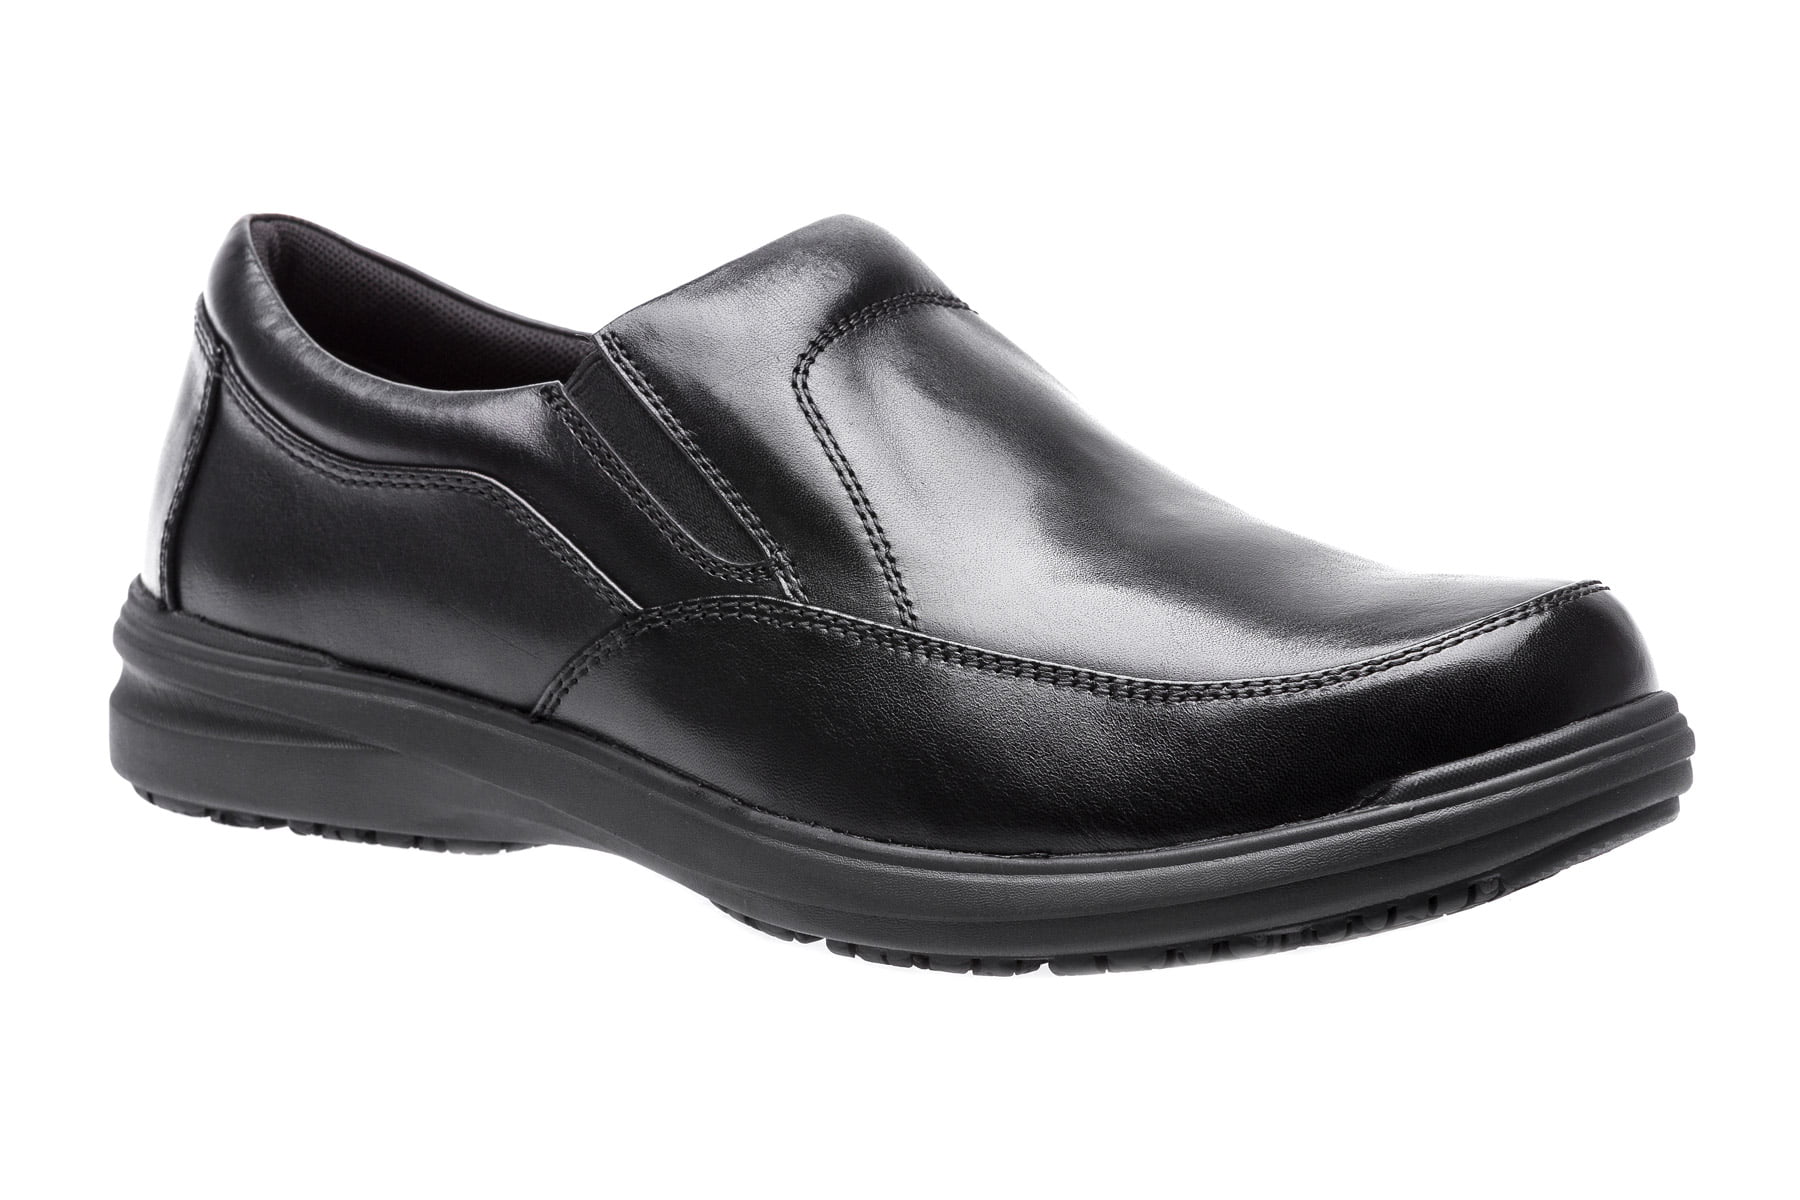 ABEO Footwear - ABEO Men's Smart 3860 - Casual Shoes - Walmart.com ...